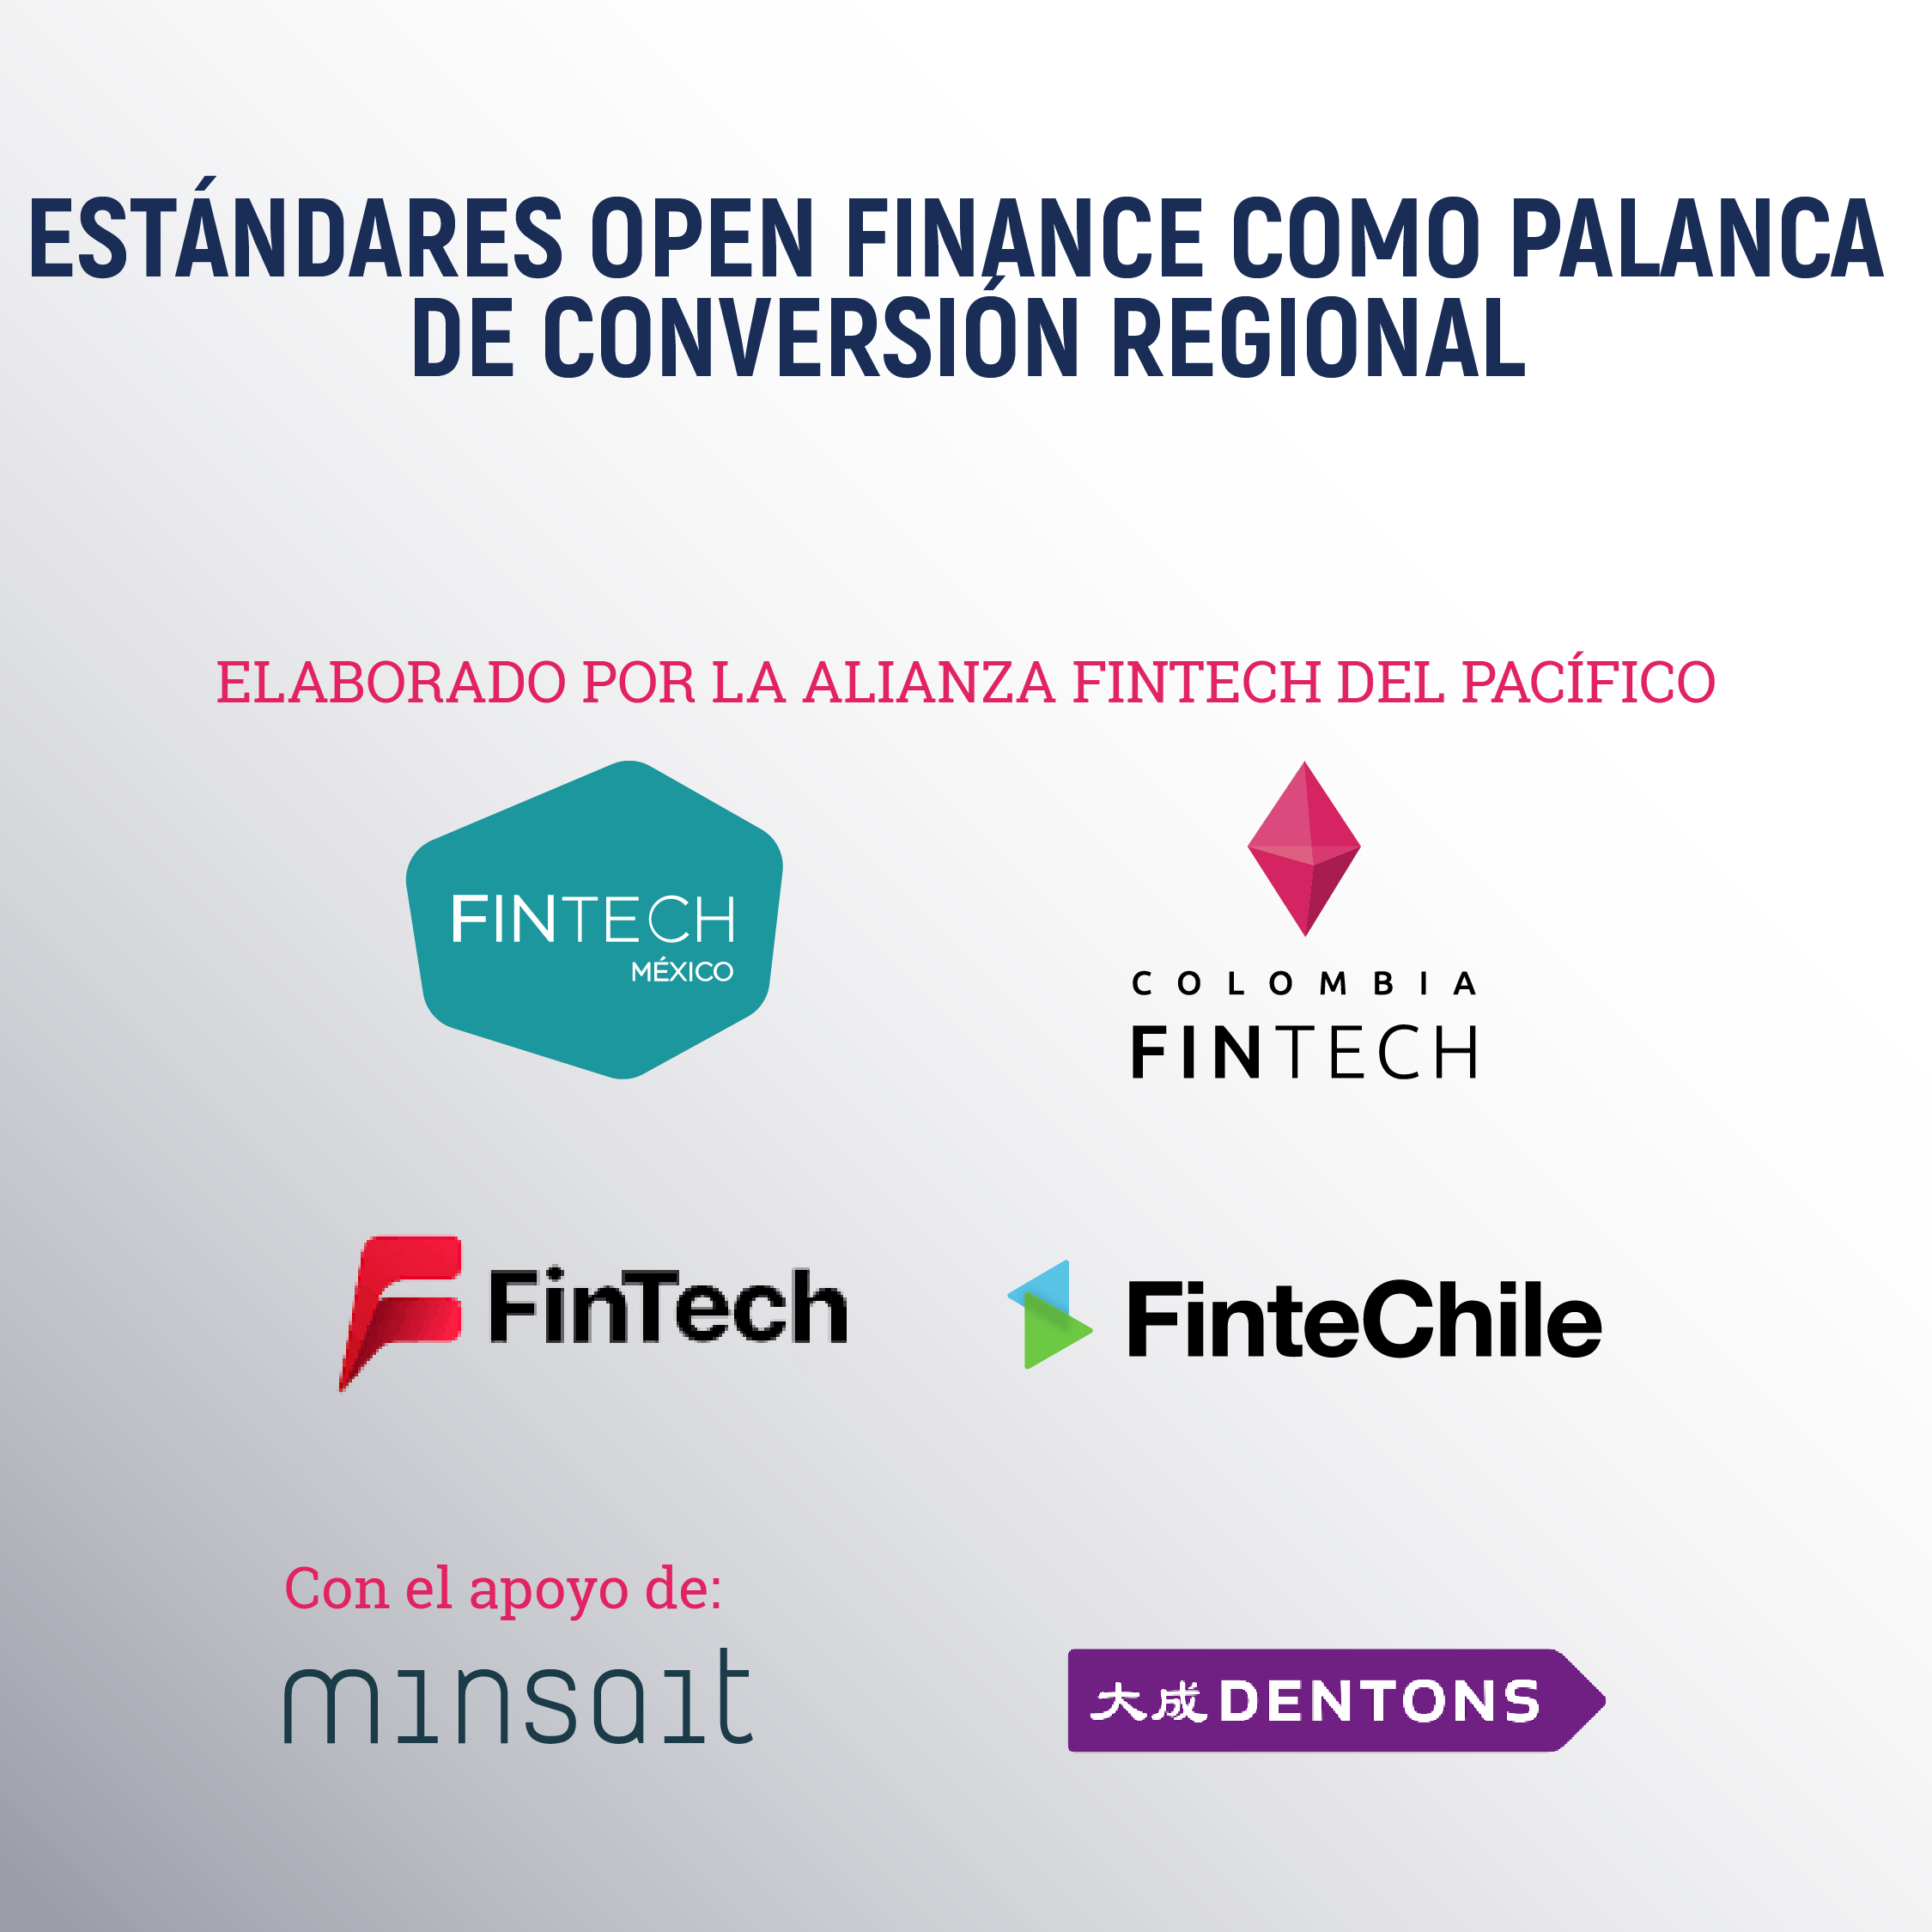 Asociaciones de Fintech de la Alianza del Pacífico lanzan propuesta conjunta sobre estándares en Finanzas Abiertas